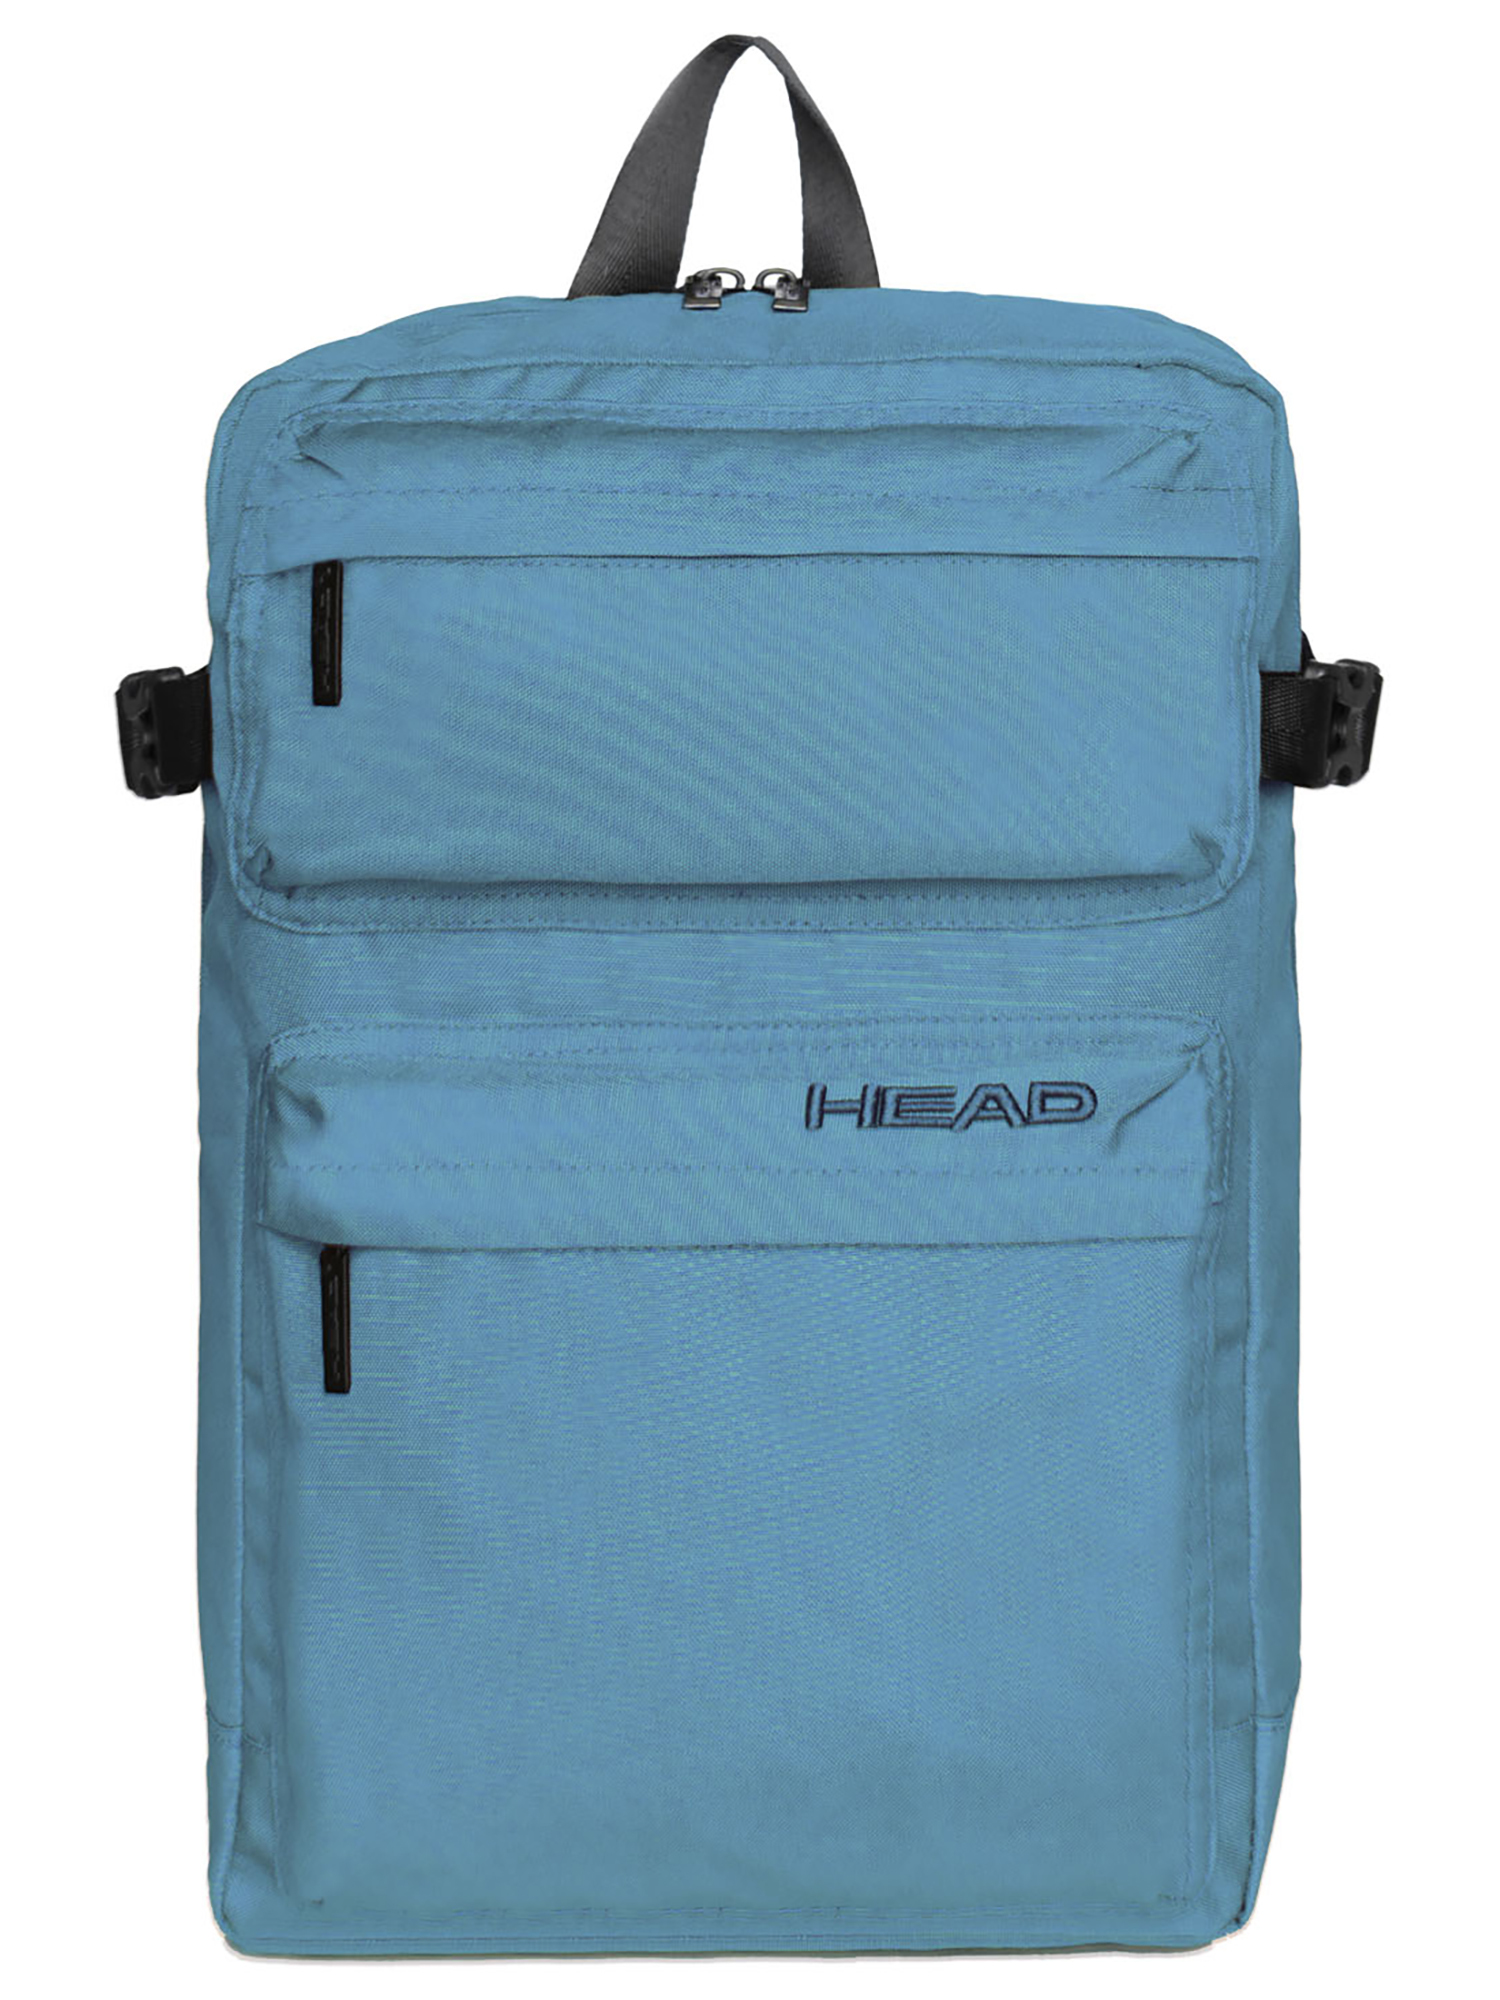 Рюкзак HEAD Day Backpack, темно синий рюкзак head kids backpack 2022 синий зеленый